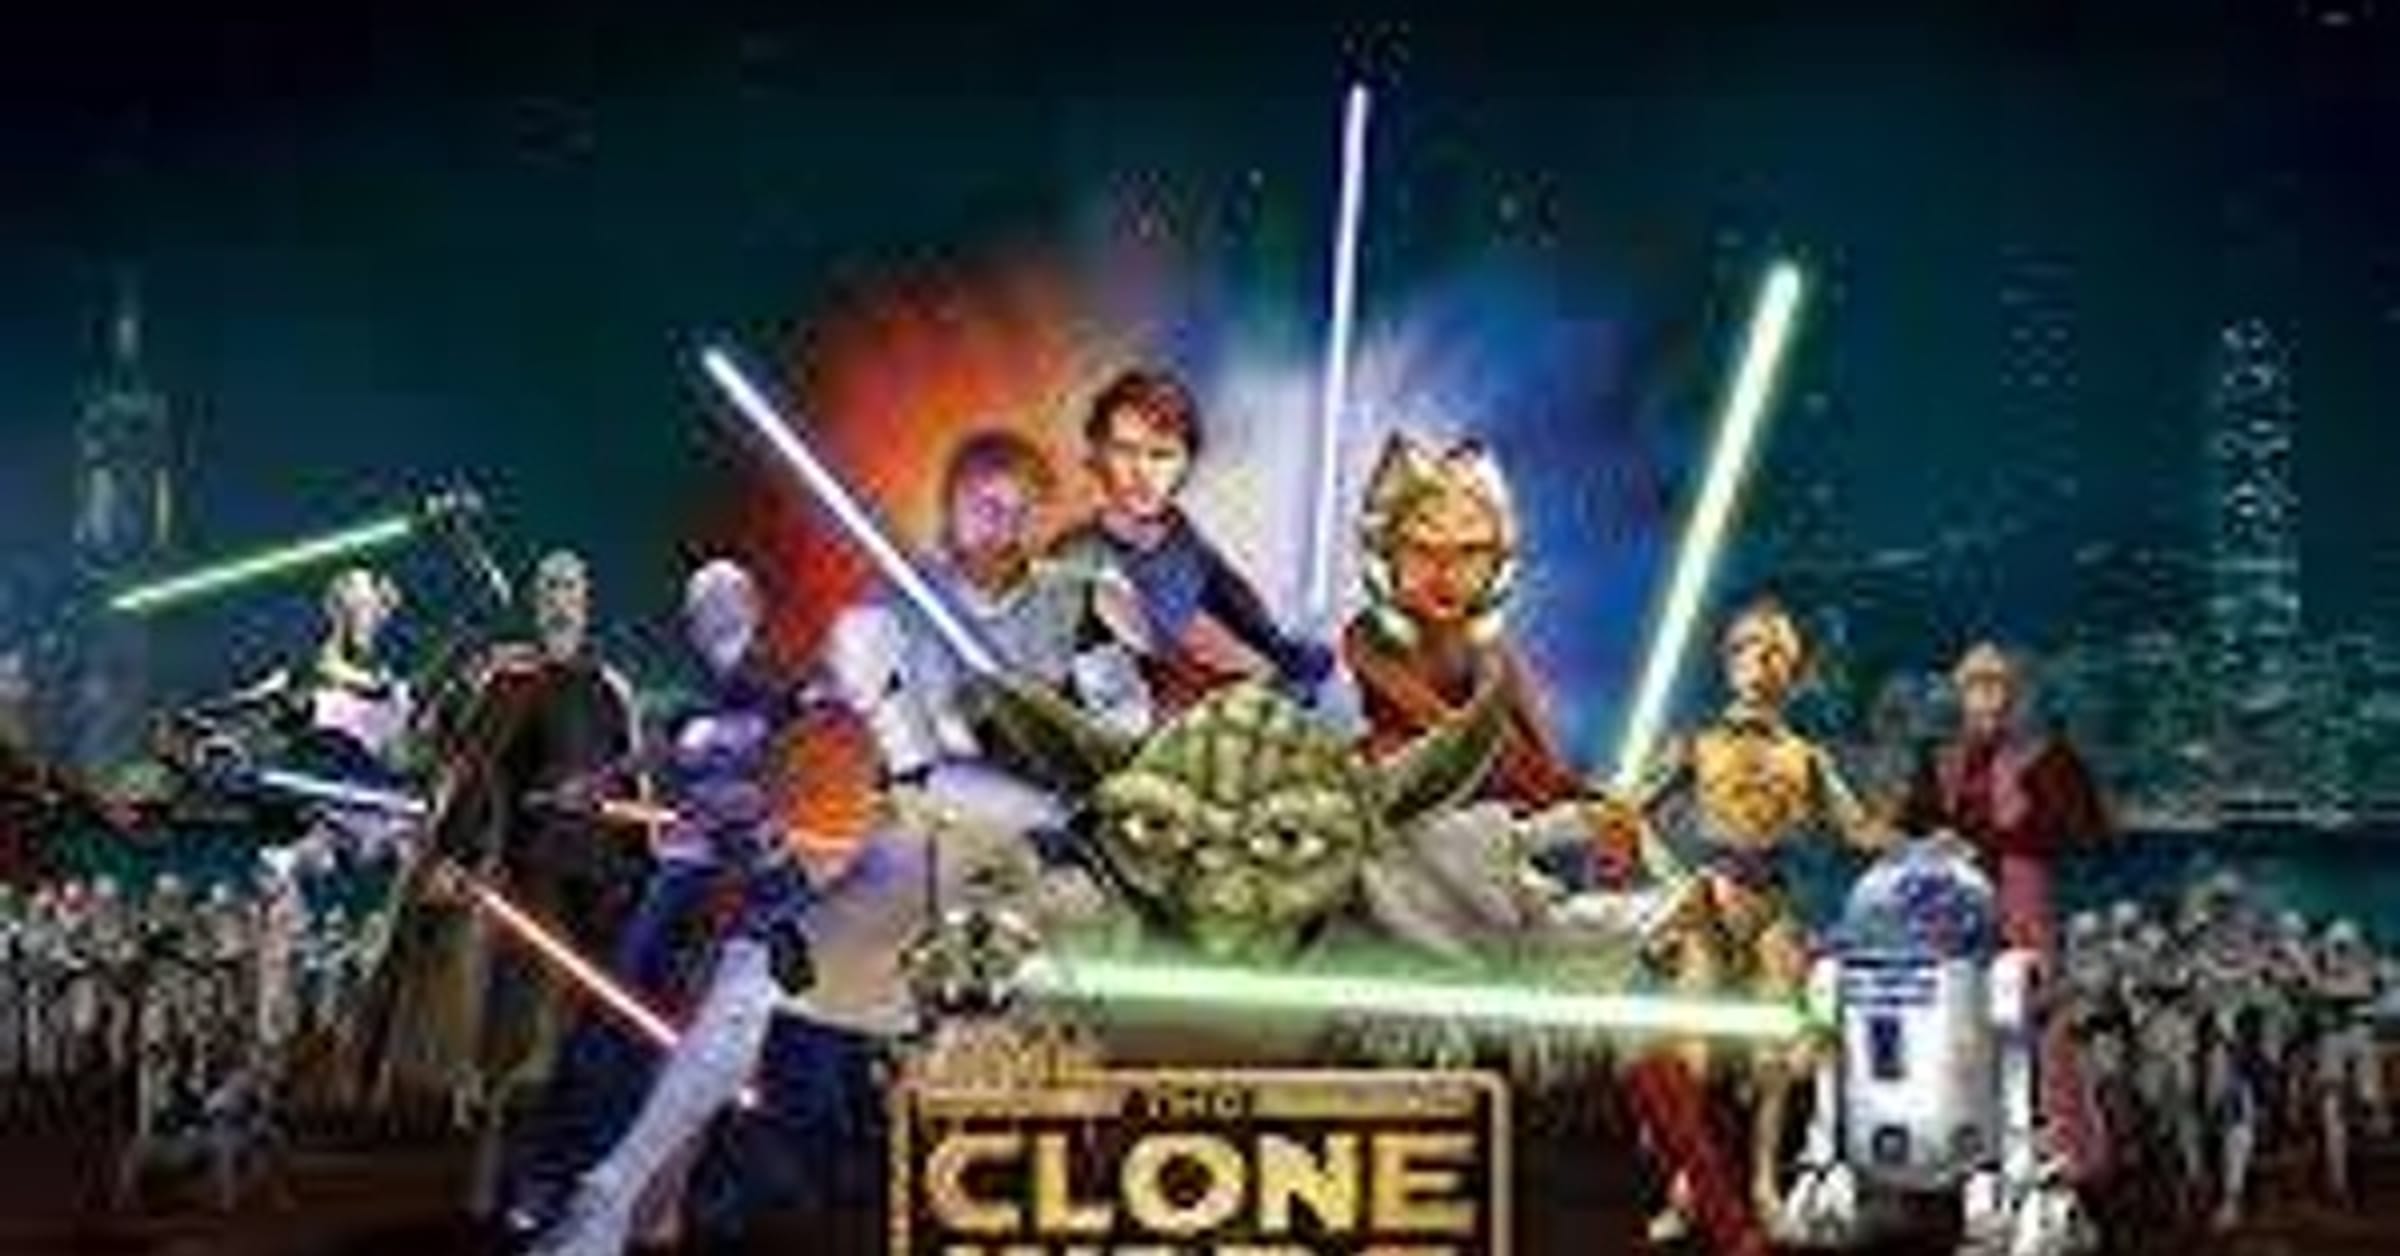 Star Wars Art Imagines Qui-Gon Jinn Fighting In The Clone Wars